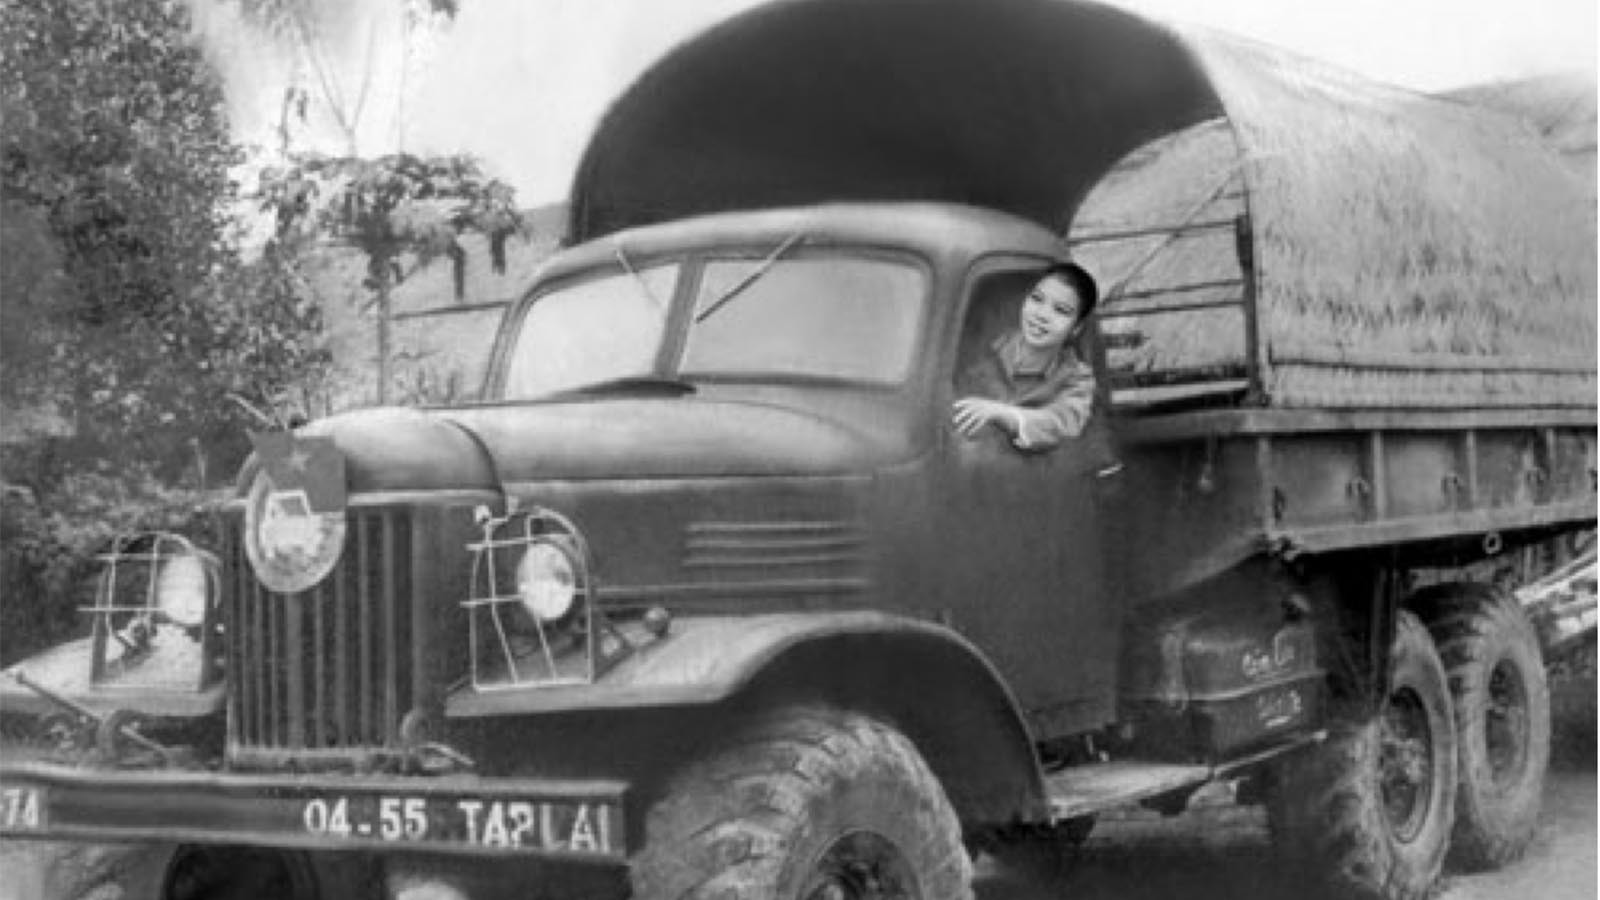 Những chiếc xe vận tải mà các cô gái Trường Sơn khi đó lái chủ yếu là Zin157, 131, Gaz 51, Gaz 69